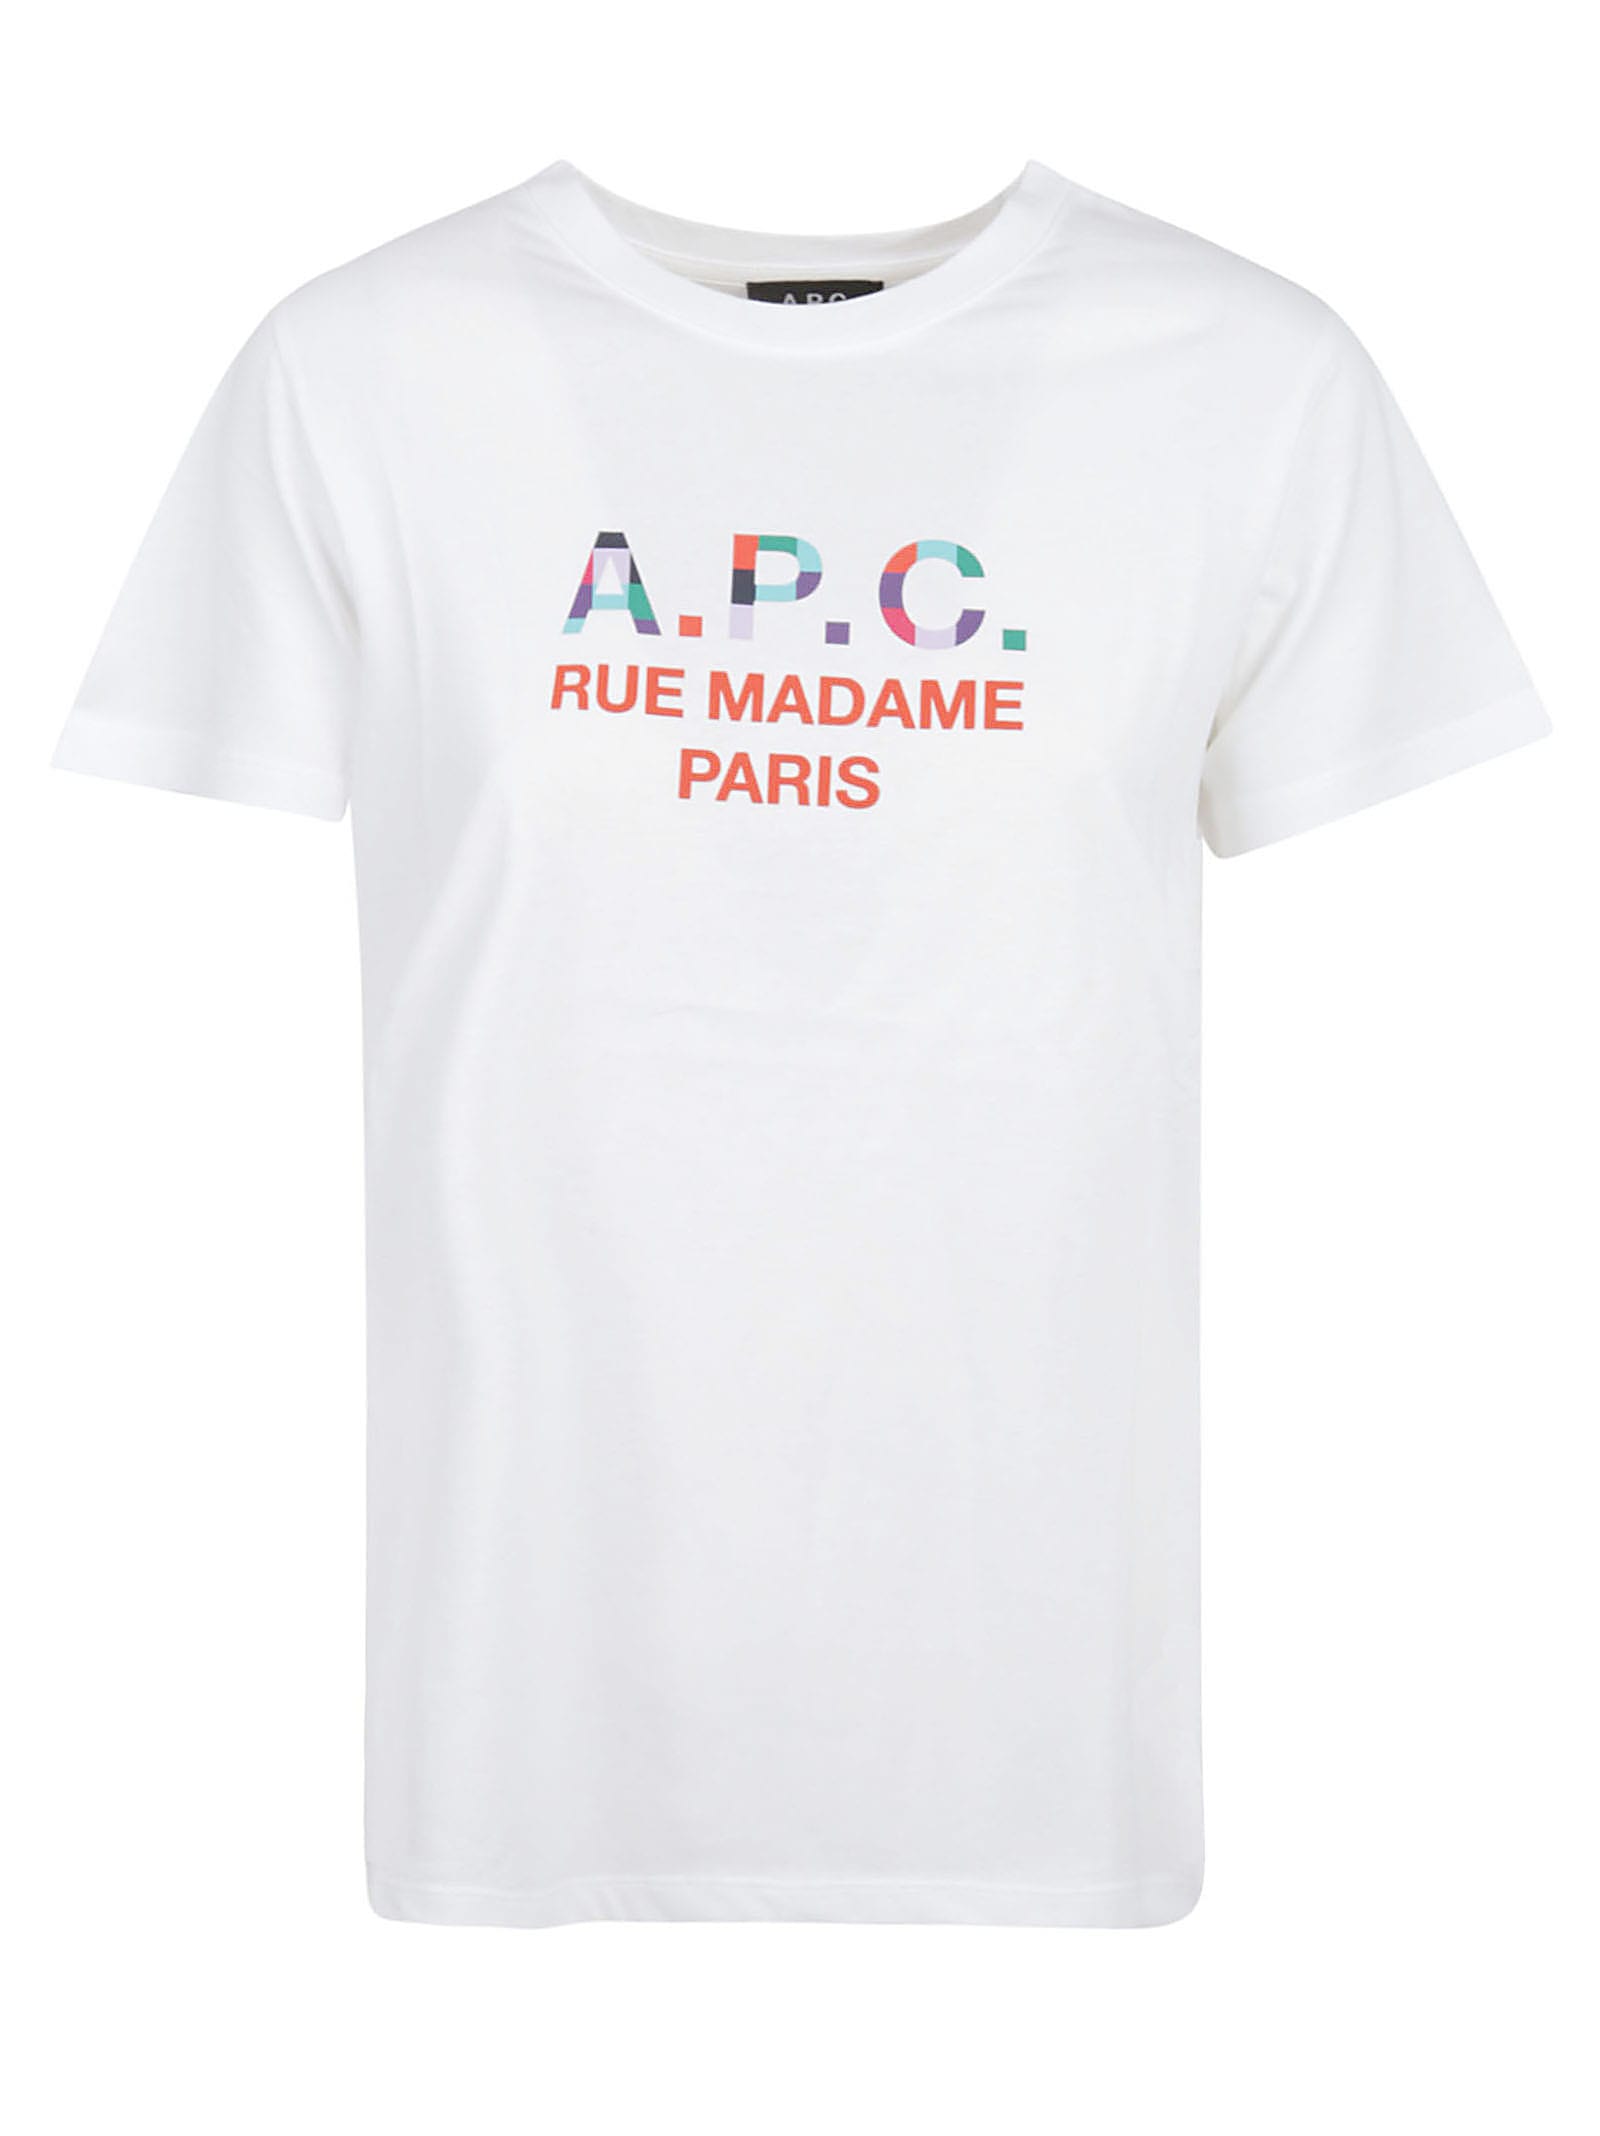 A.P.C. Tao Femme T-shirt